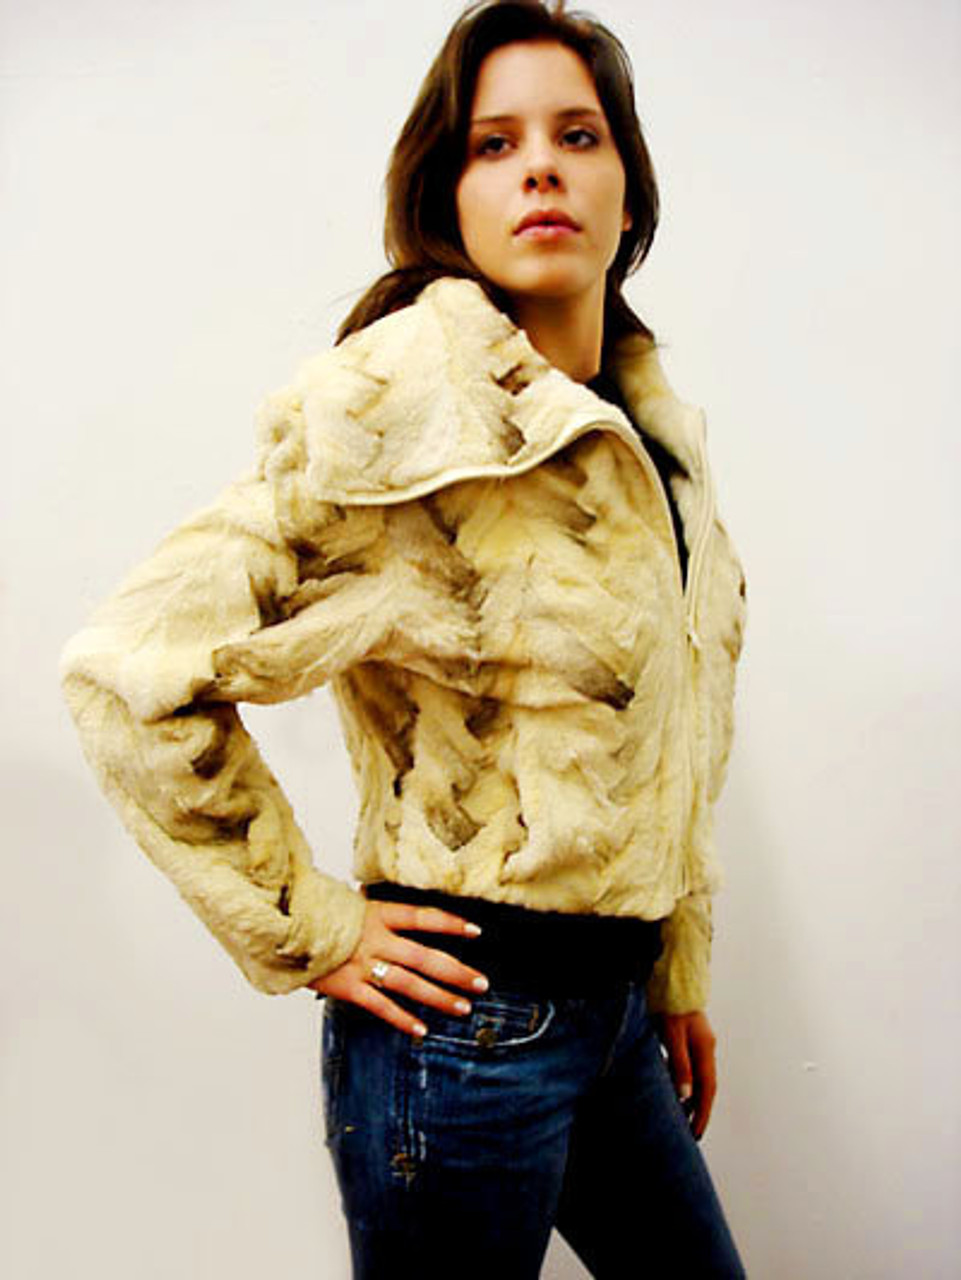 Monogram Mink Hooded Bomber Jacket - Women - Ready-to-Wear